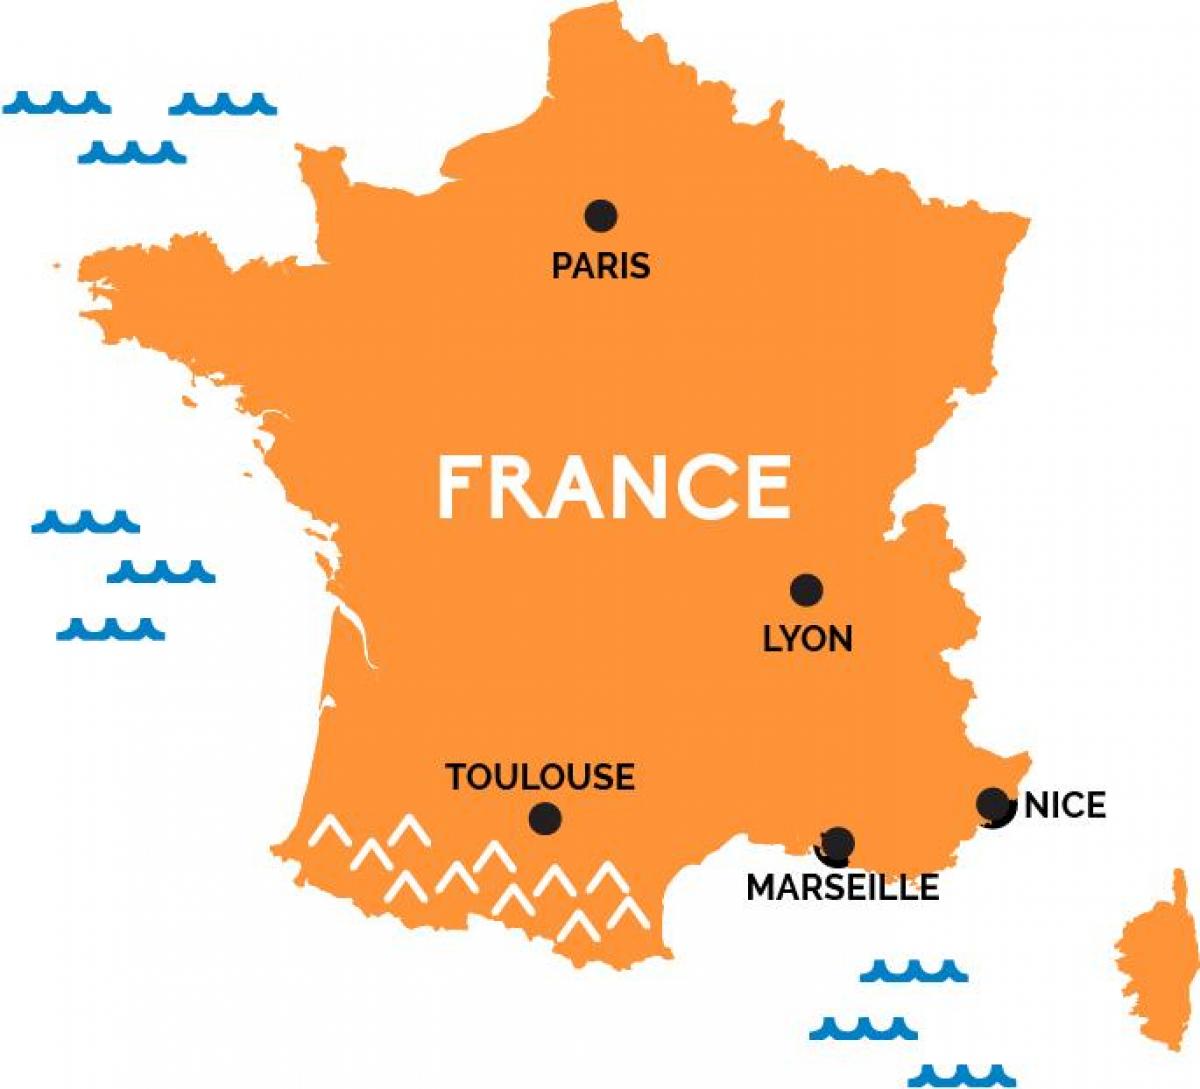 Paris France sur la carte